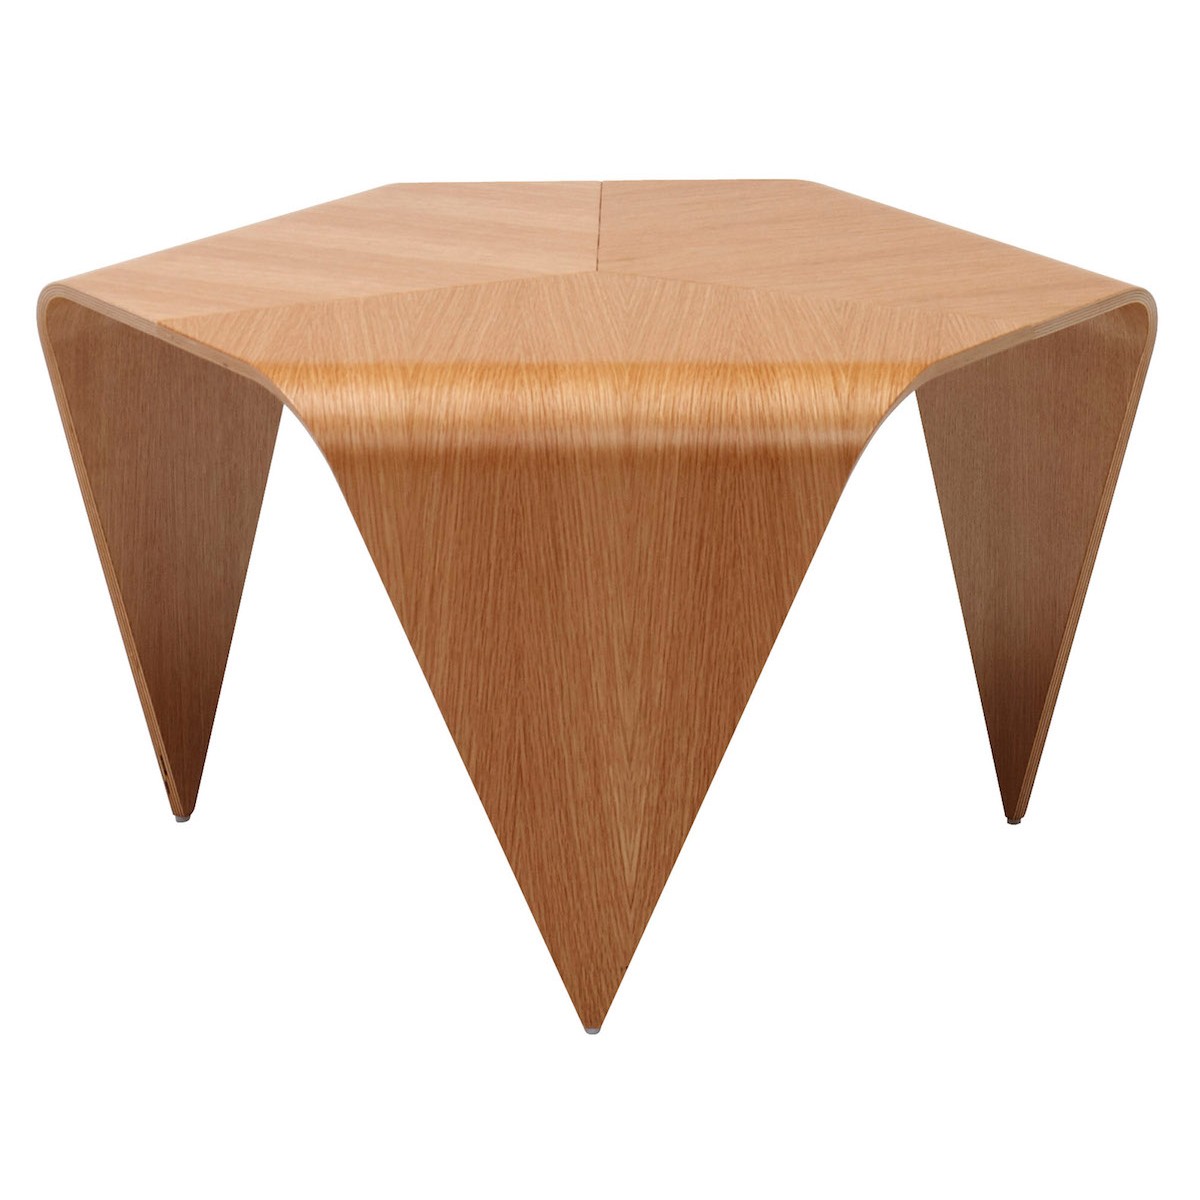 oak - Trienna side table